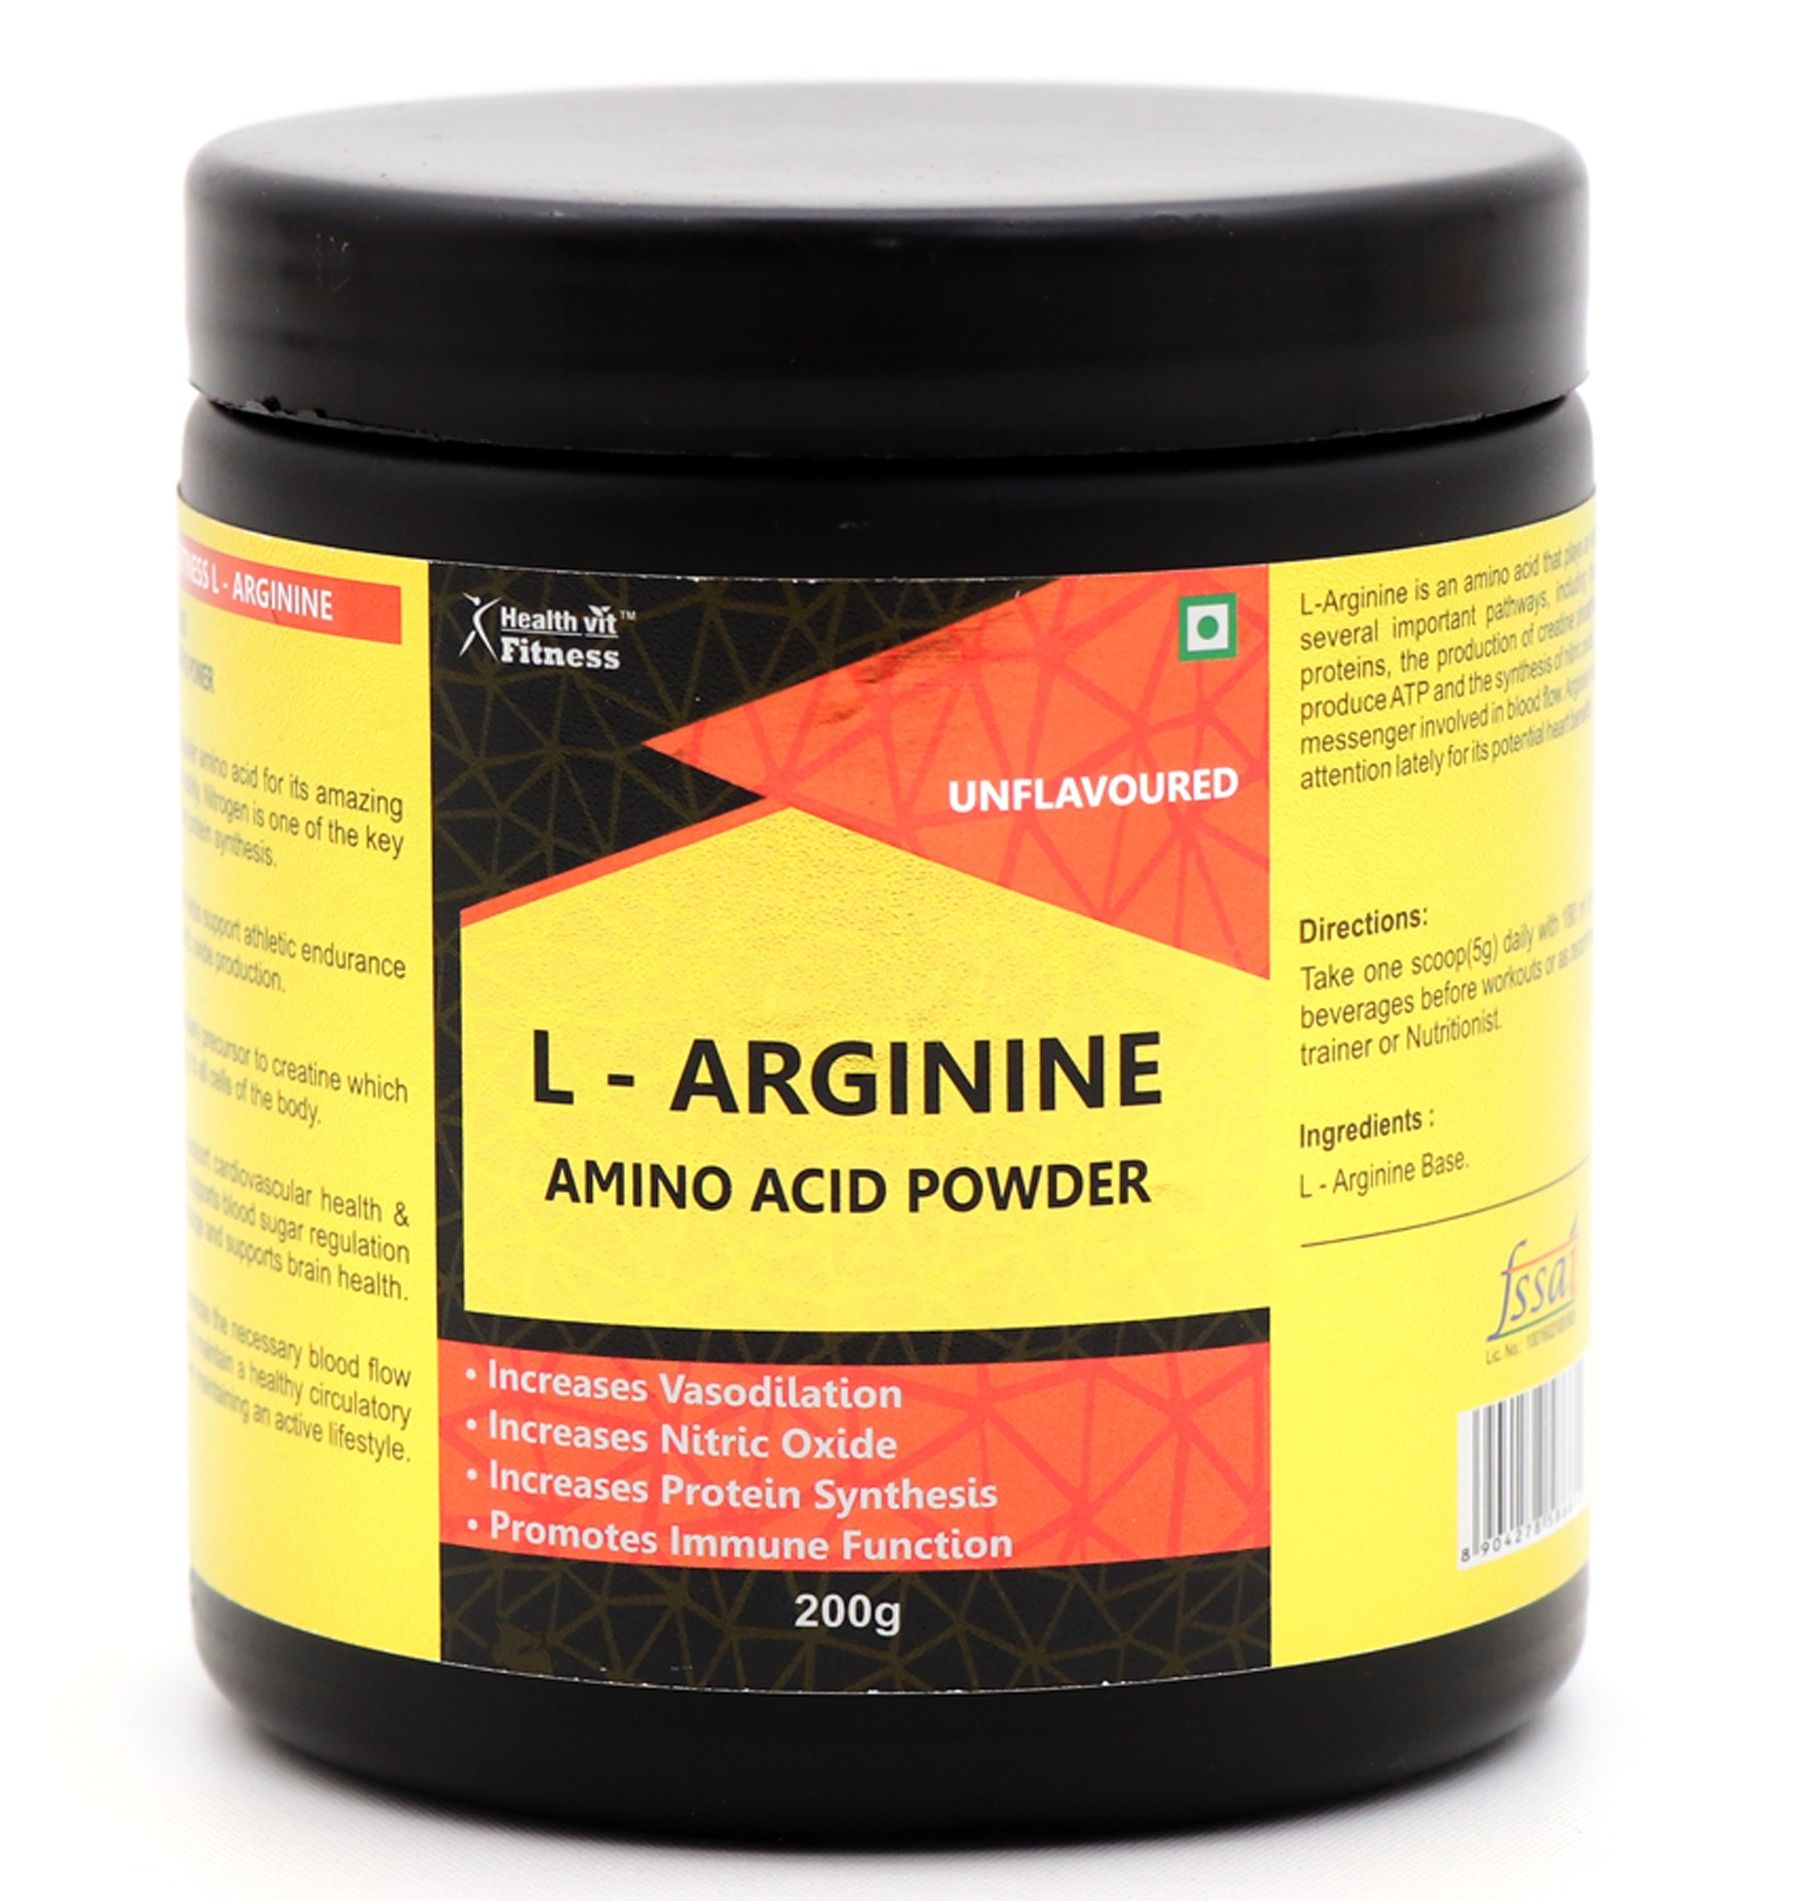 HealthVit L-Arginine Amino Acid Powder (Unflavoured)